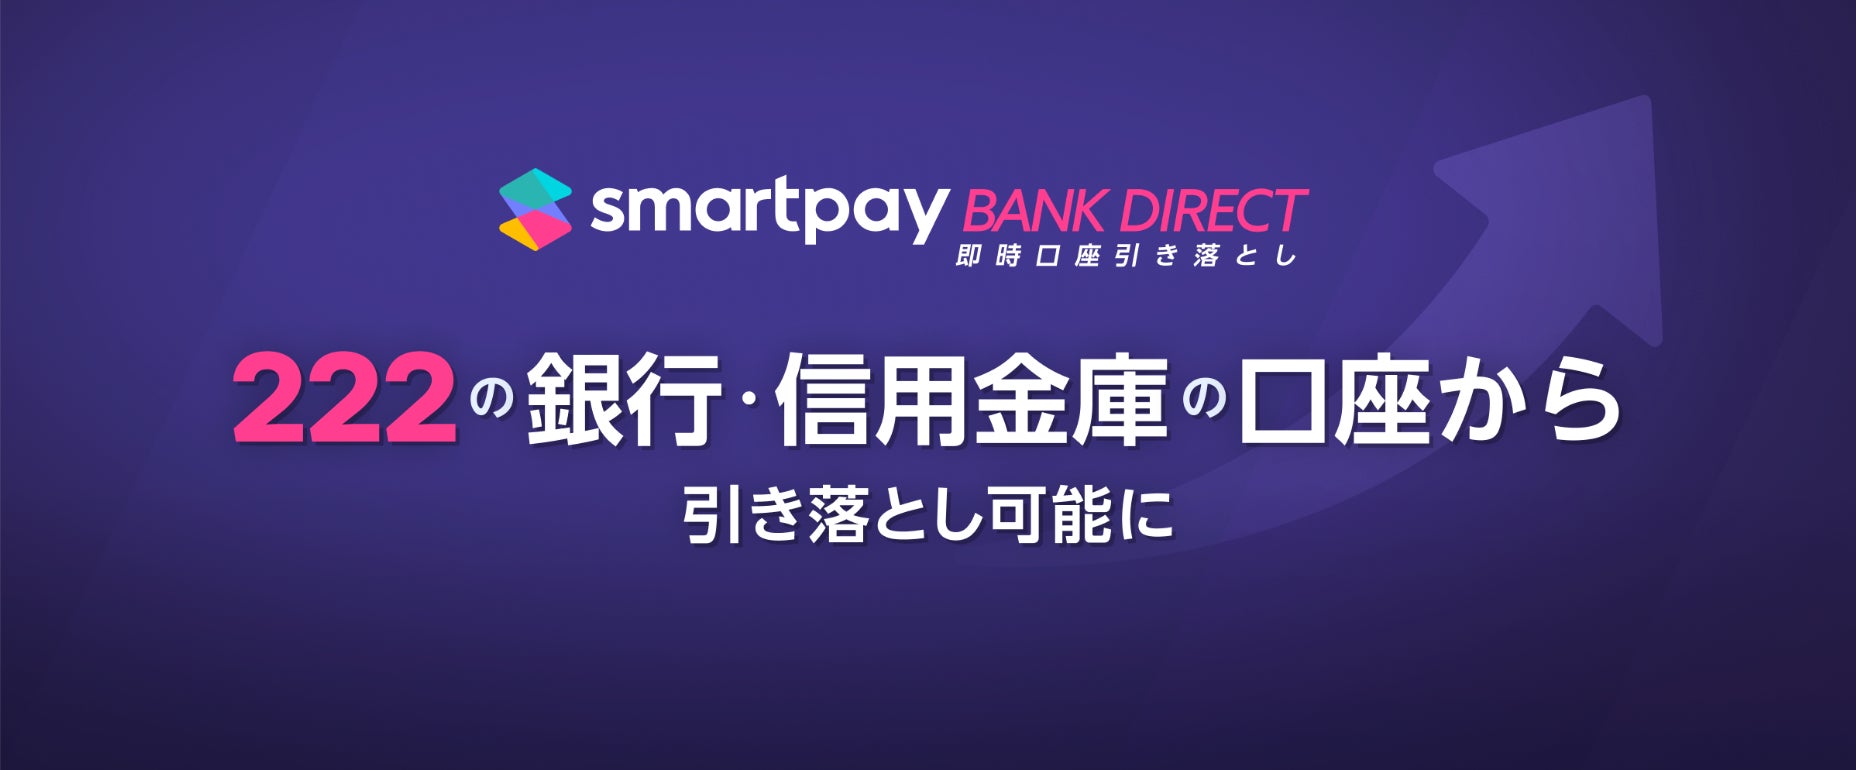 Smartpay、銀行口座からの即時引き落とし機能「Bank Direct」に提携金融機関149行を追加